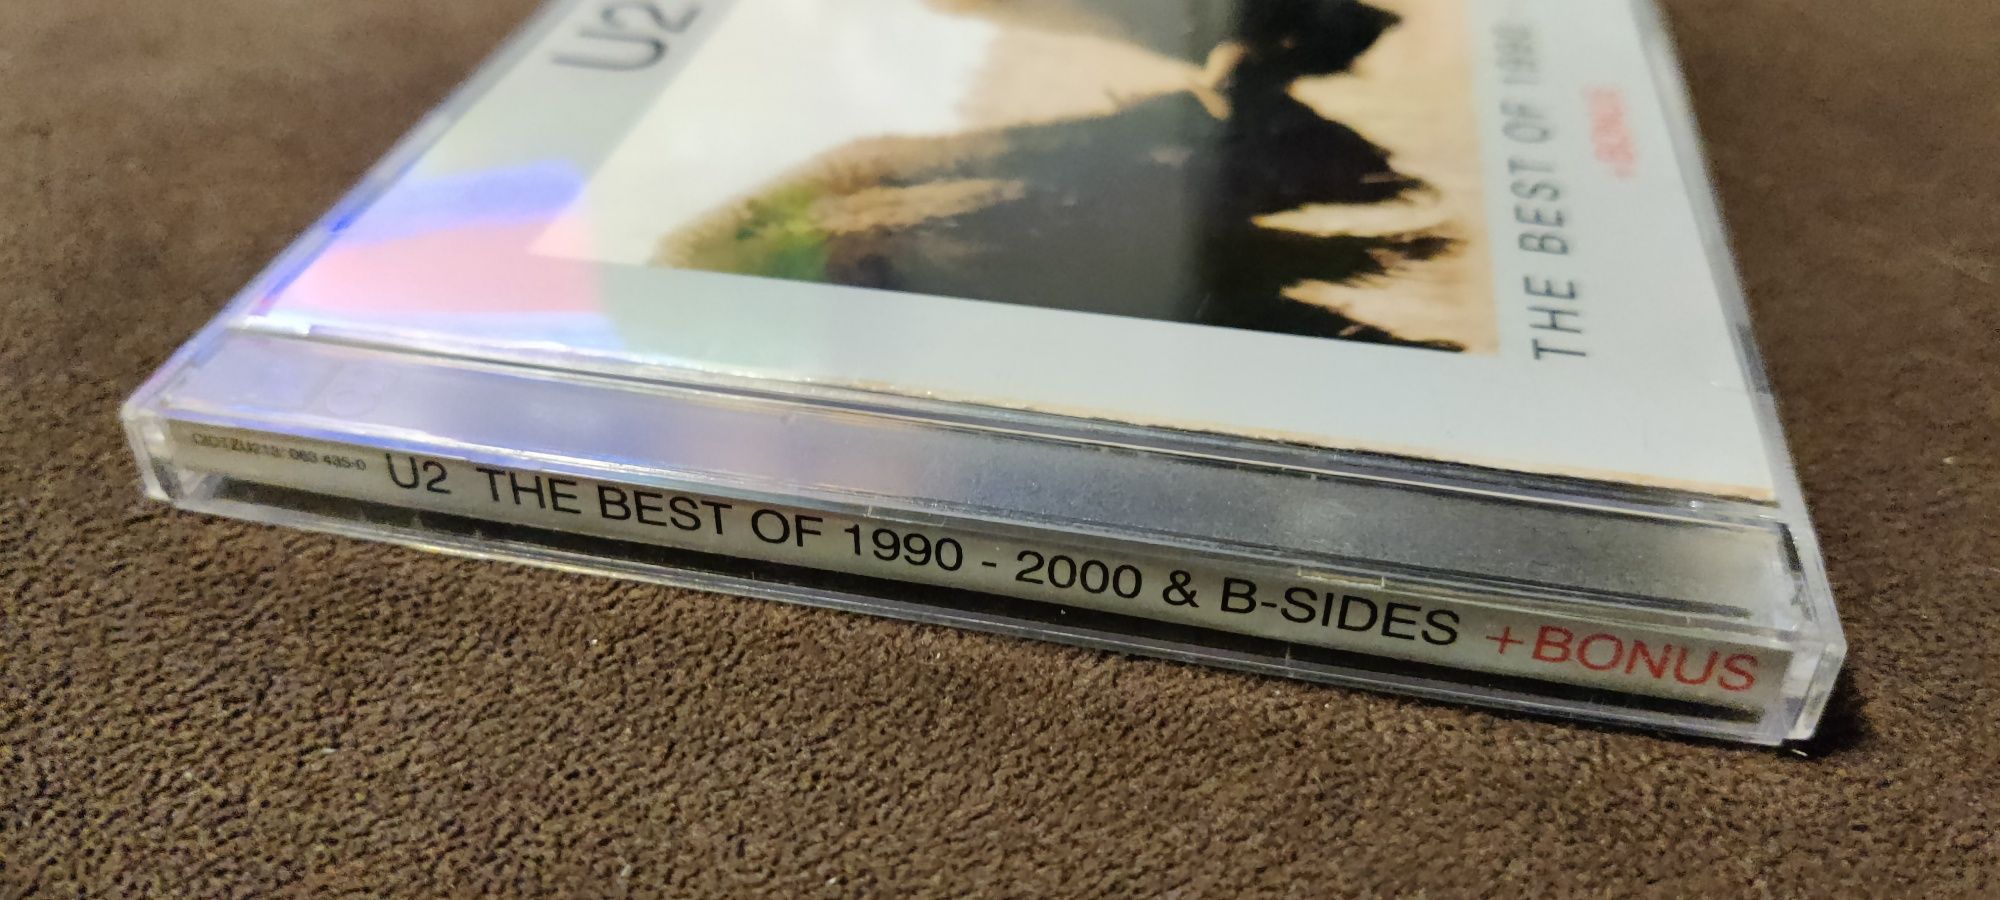 U2 - The best of 1990 - 2000 CD 2 płyty